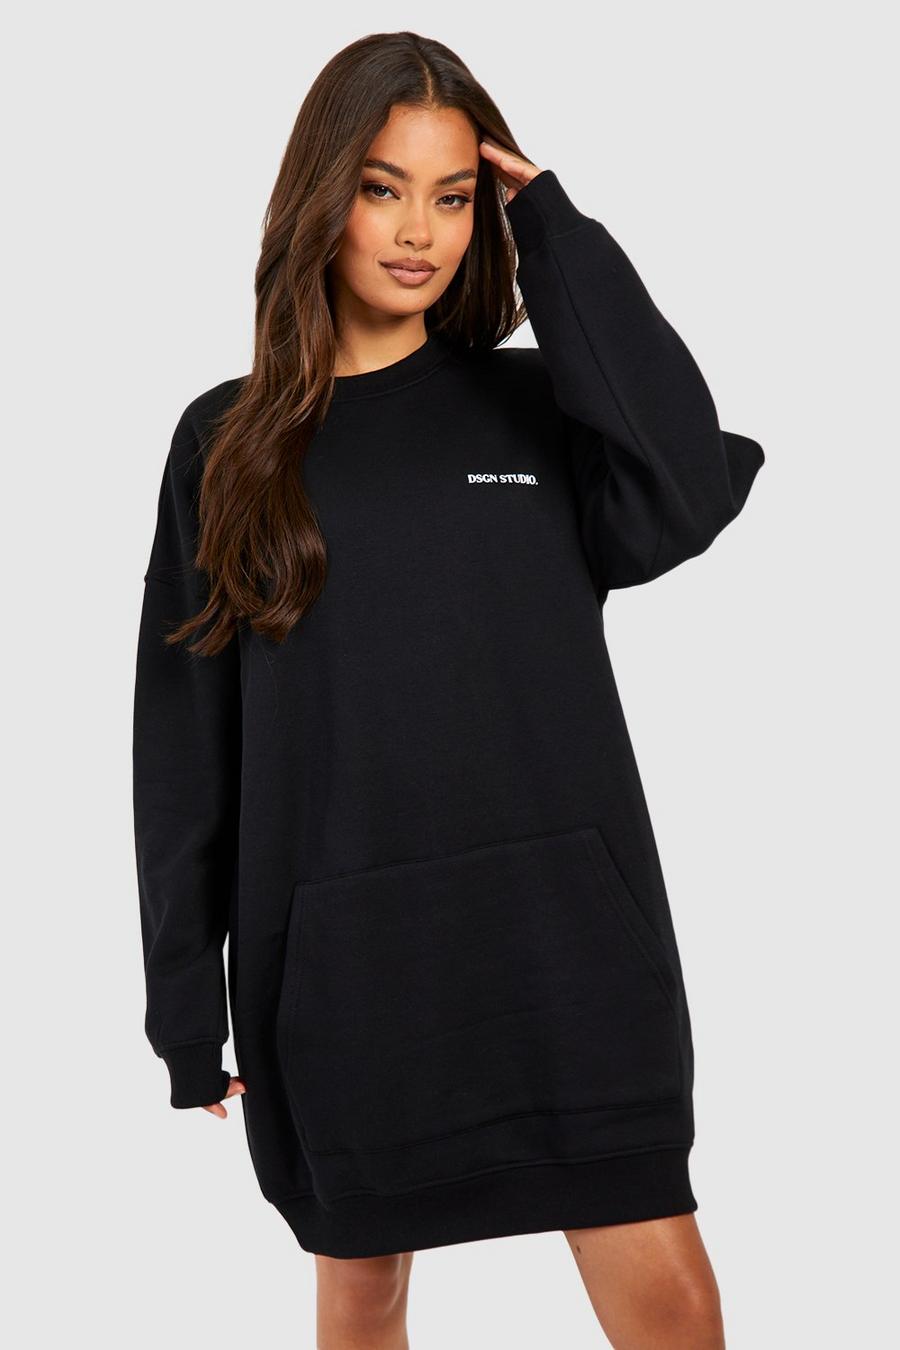 Oversize Sweatshirt-Kleid mit Dsgn Studio Tasche, Black